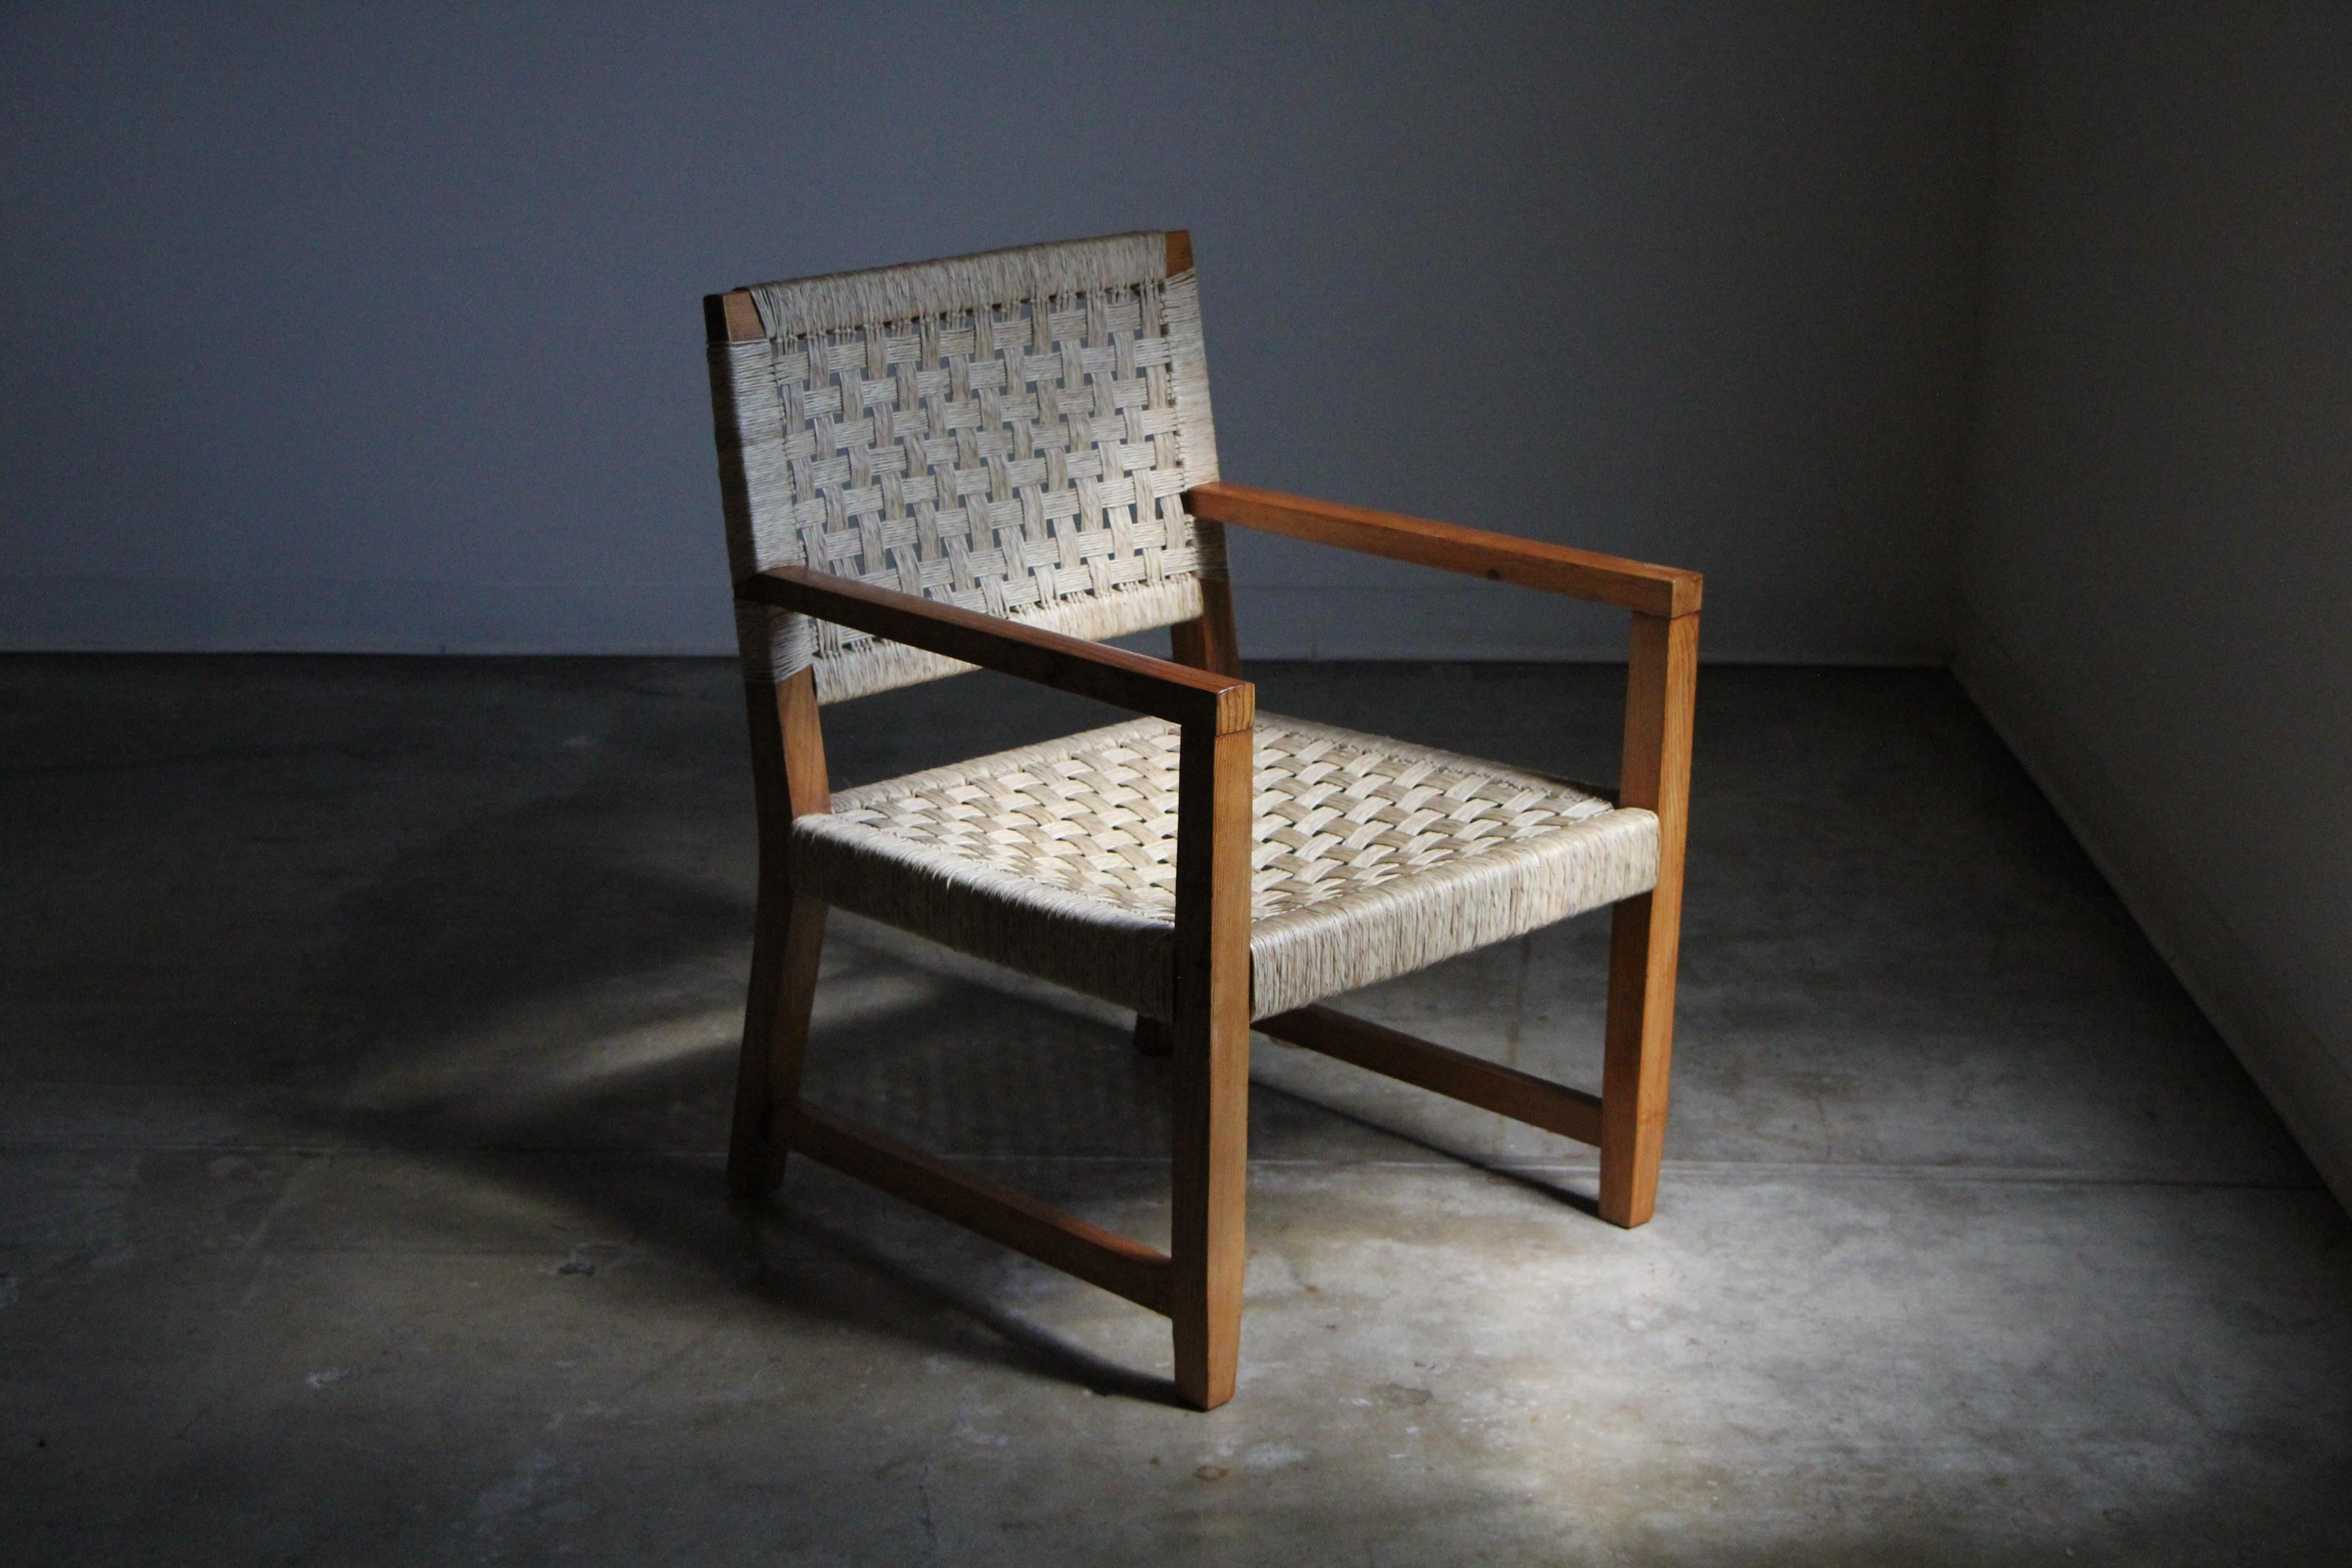 Cette chaise longue absolument magnifique et très rare a été conçue par le designer Michael van Beuren, formé au Bauhaus, pour Muebles, au Mexique, dans les années 1940. La chaise est construite en pin massif, avec l'assise et le dossier